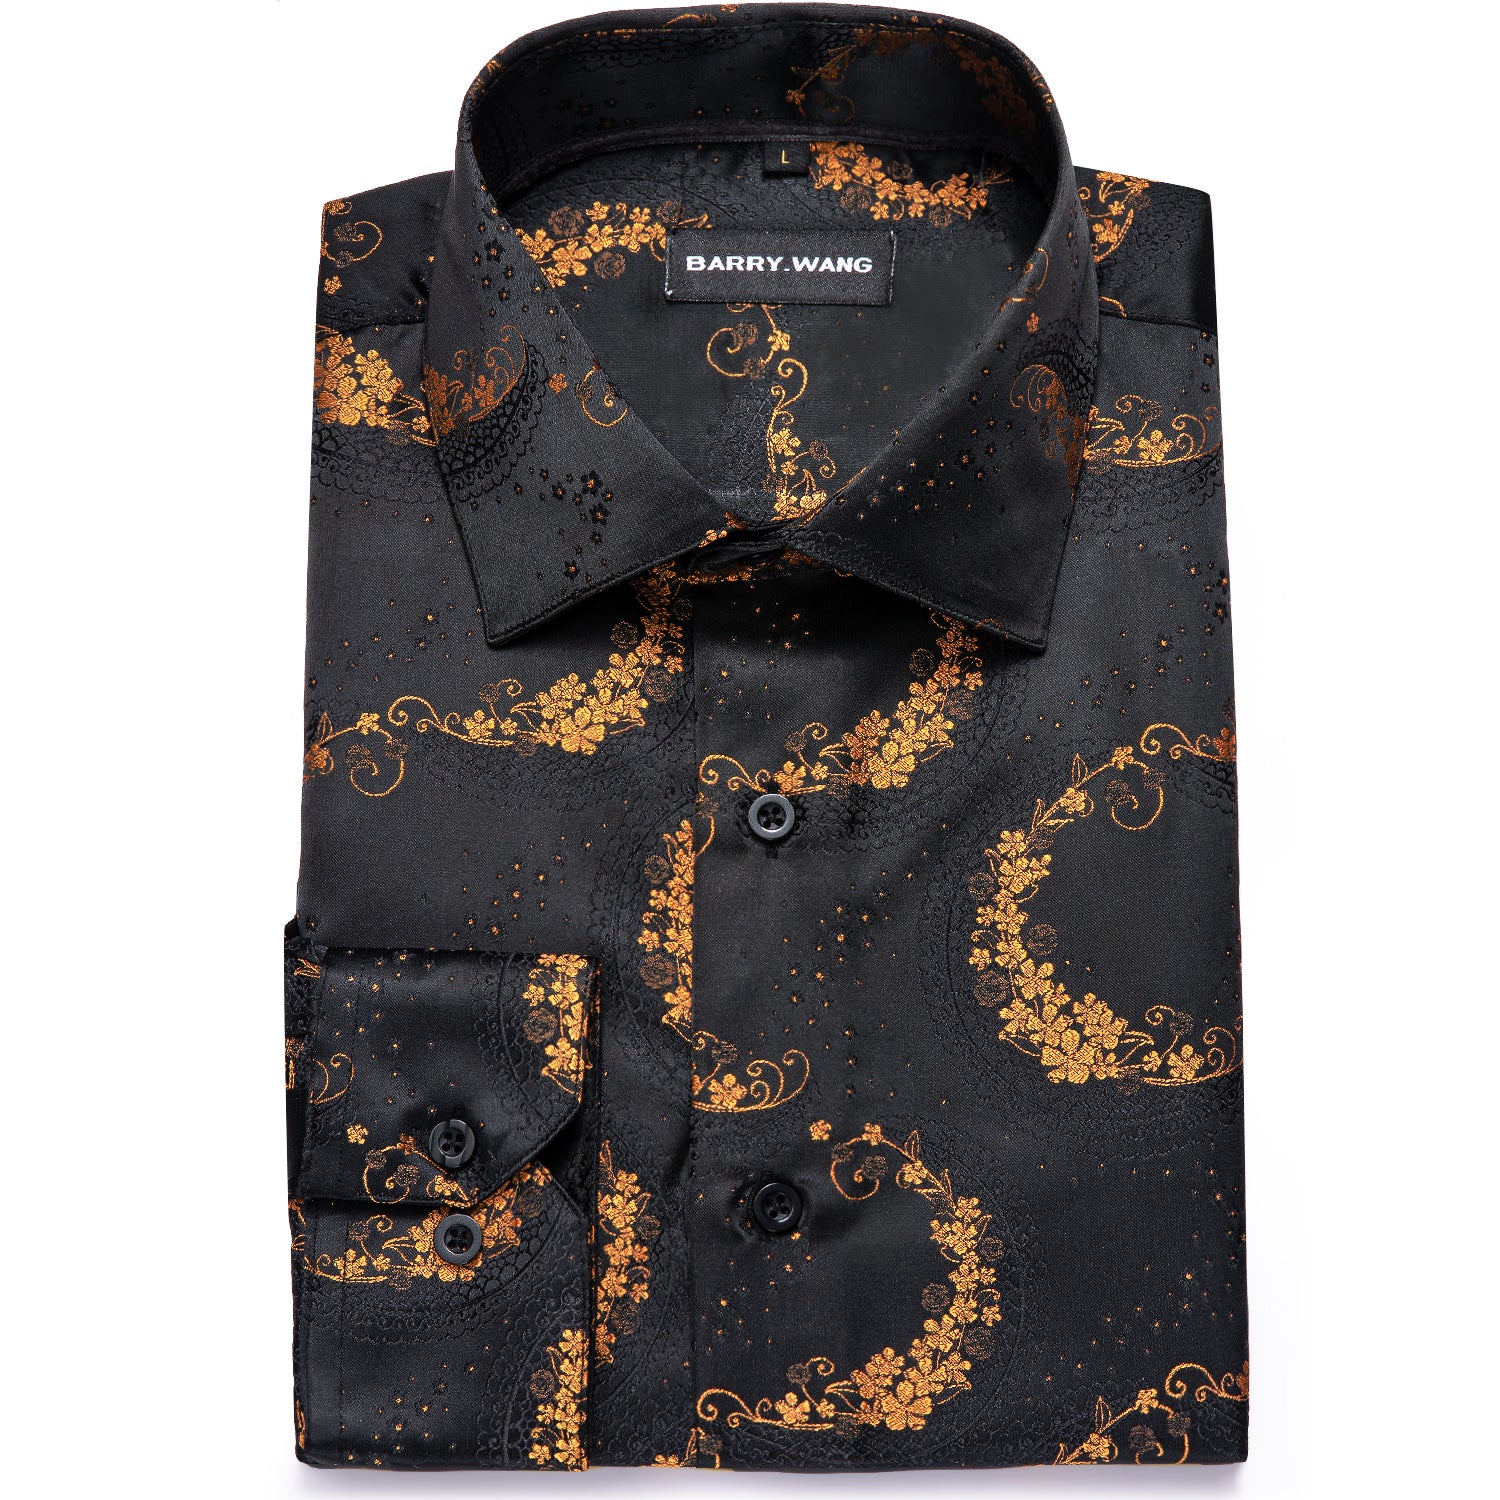 Barry.wang Black Golden Paisley Silk Floral Button Up Shirt